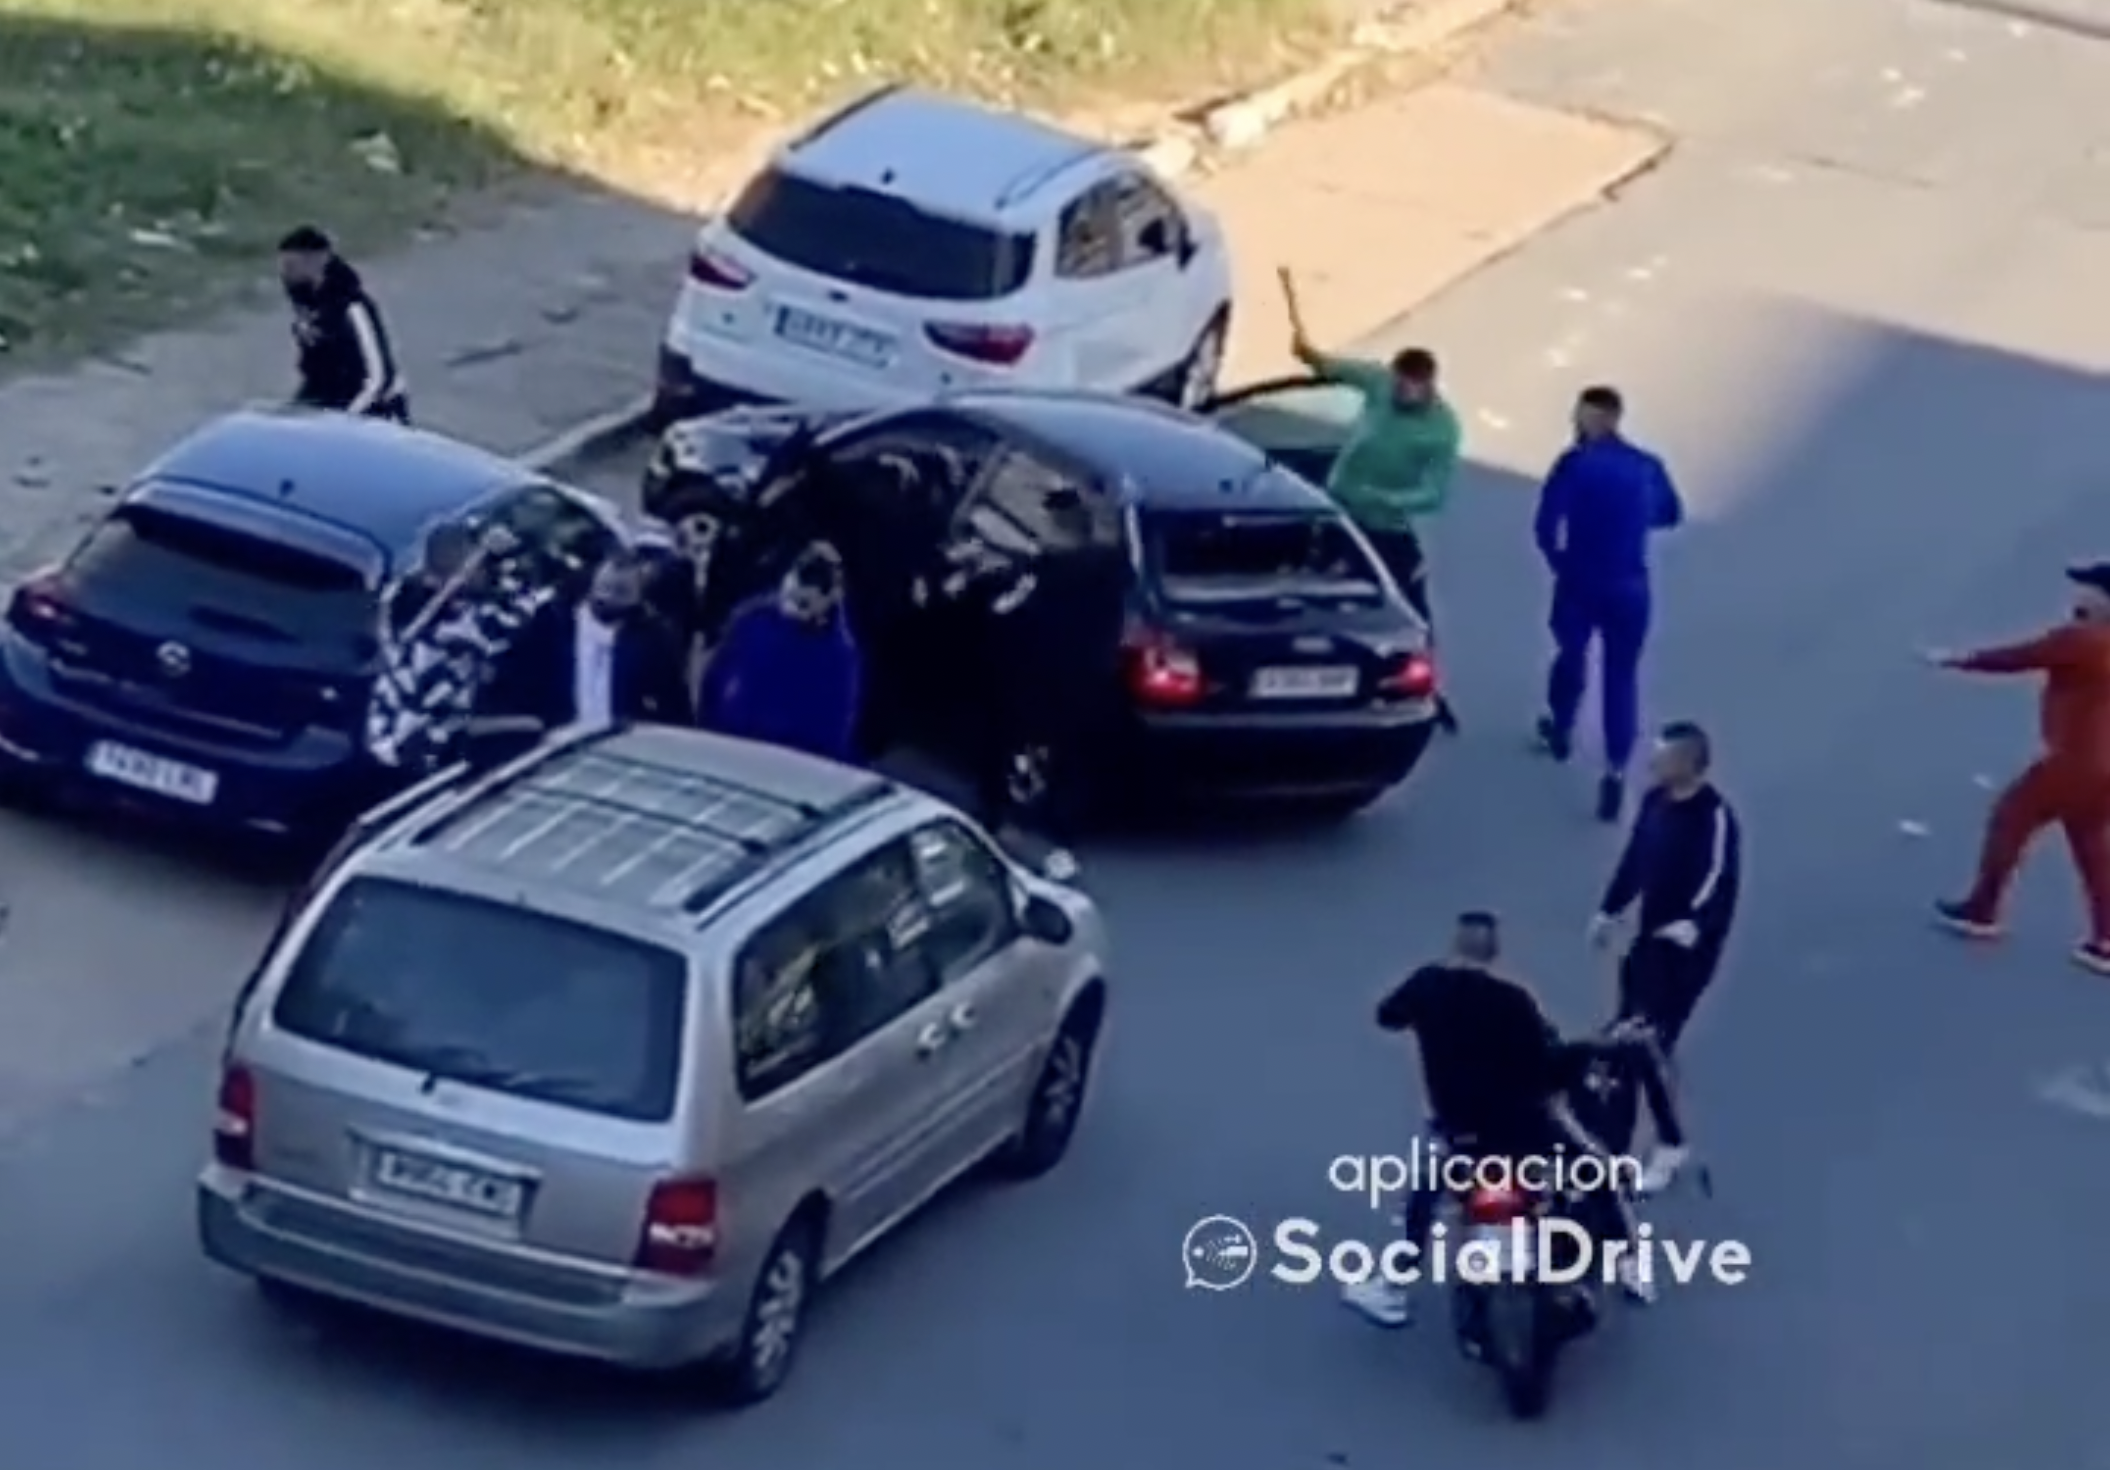 Imagen de la agresión en Huelva, un grupo de personas atacan un vehículo con diferentes objetos.